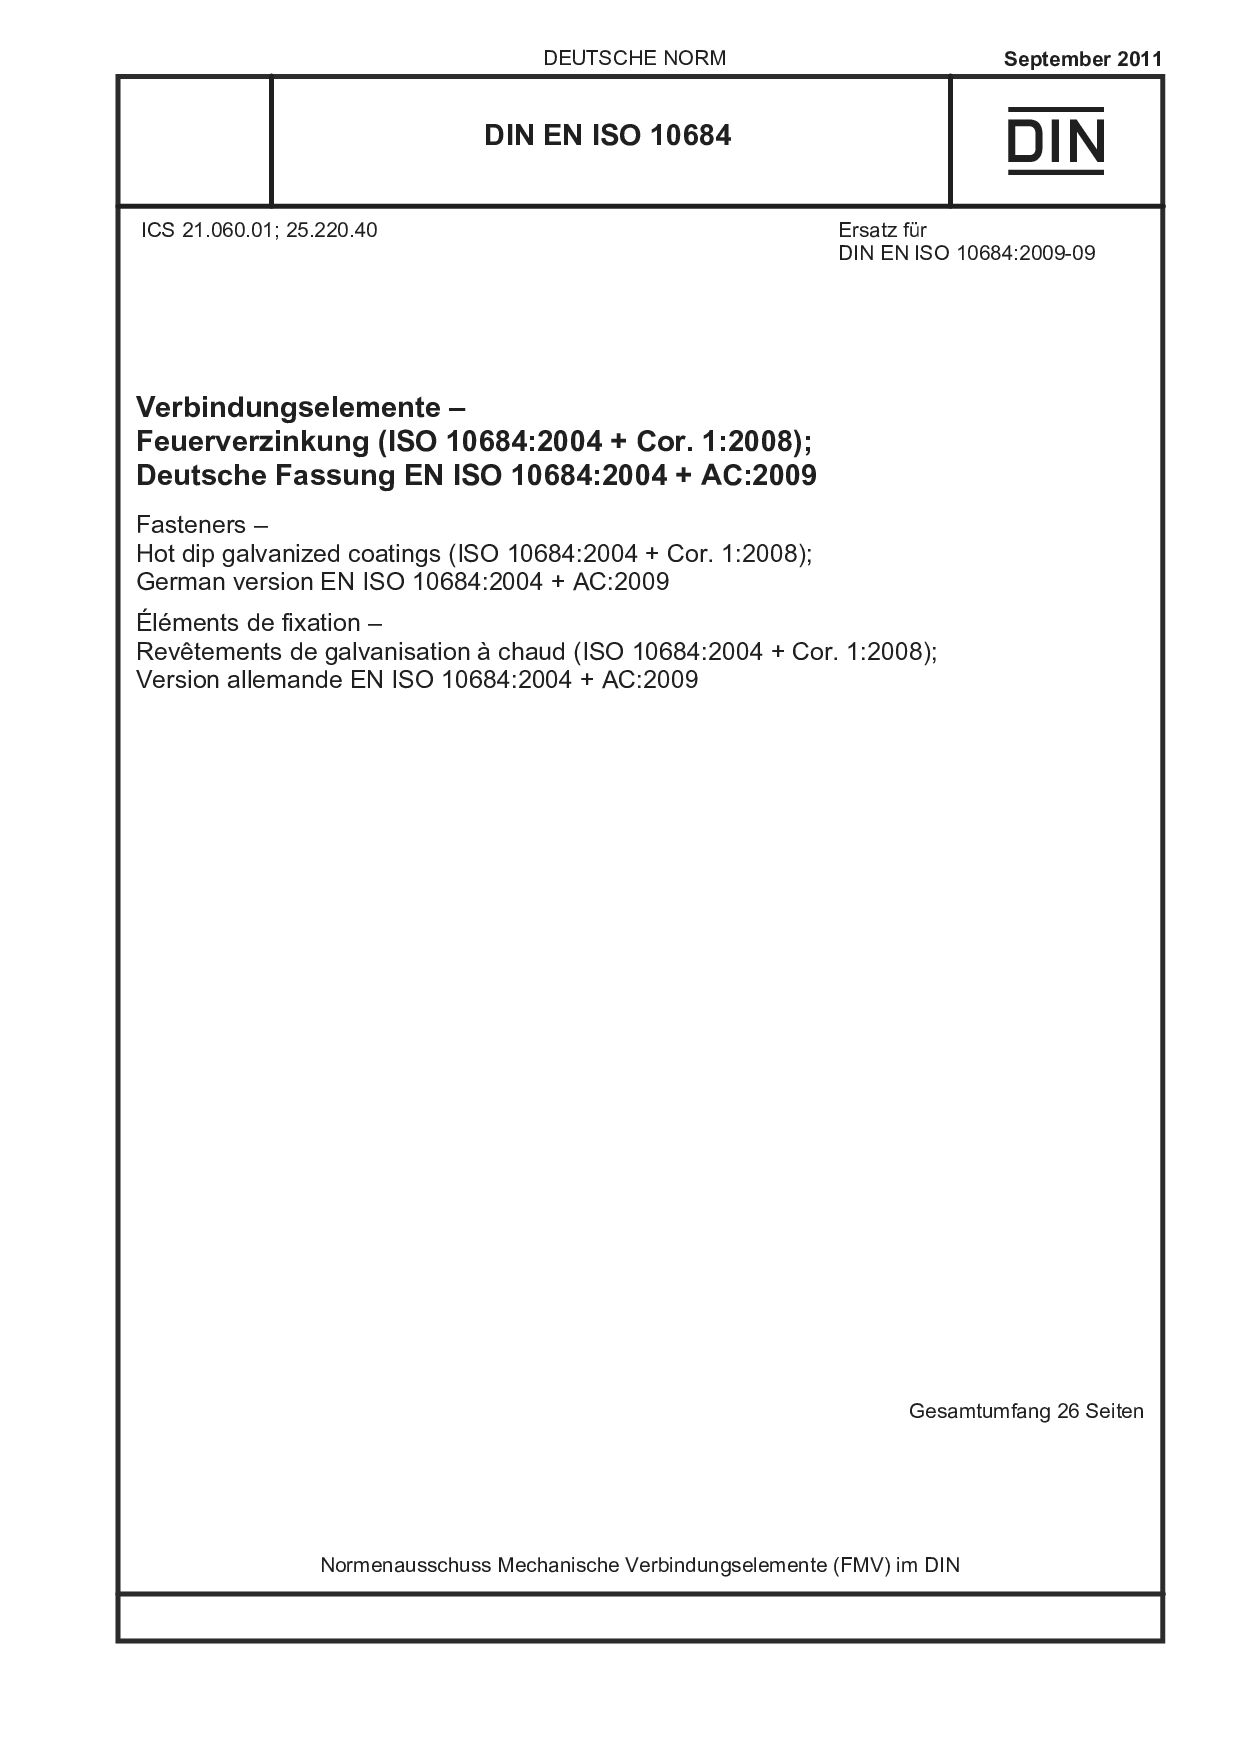 DIN EN ISO 10684:2011封面图